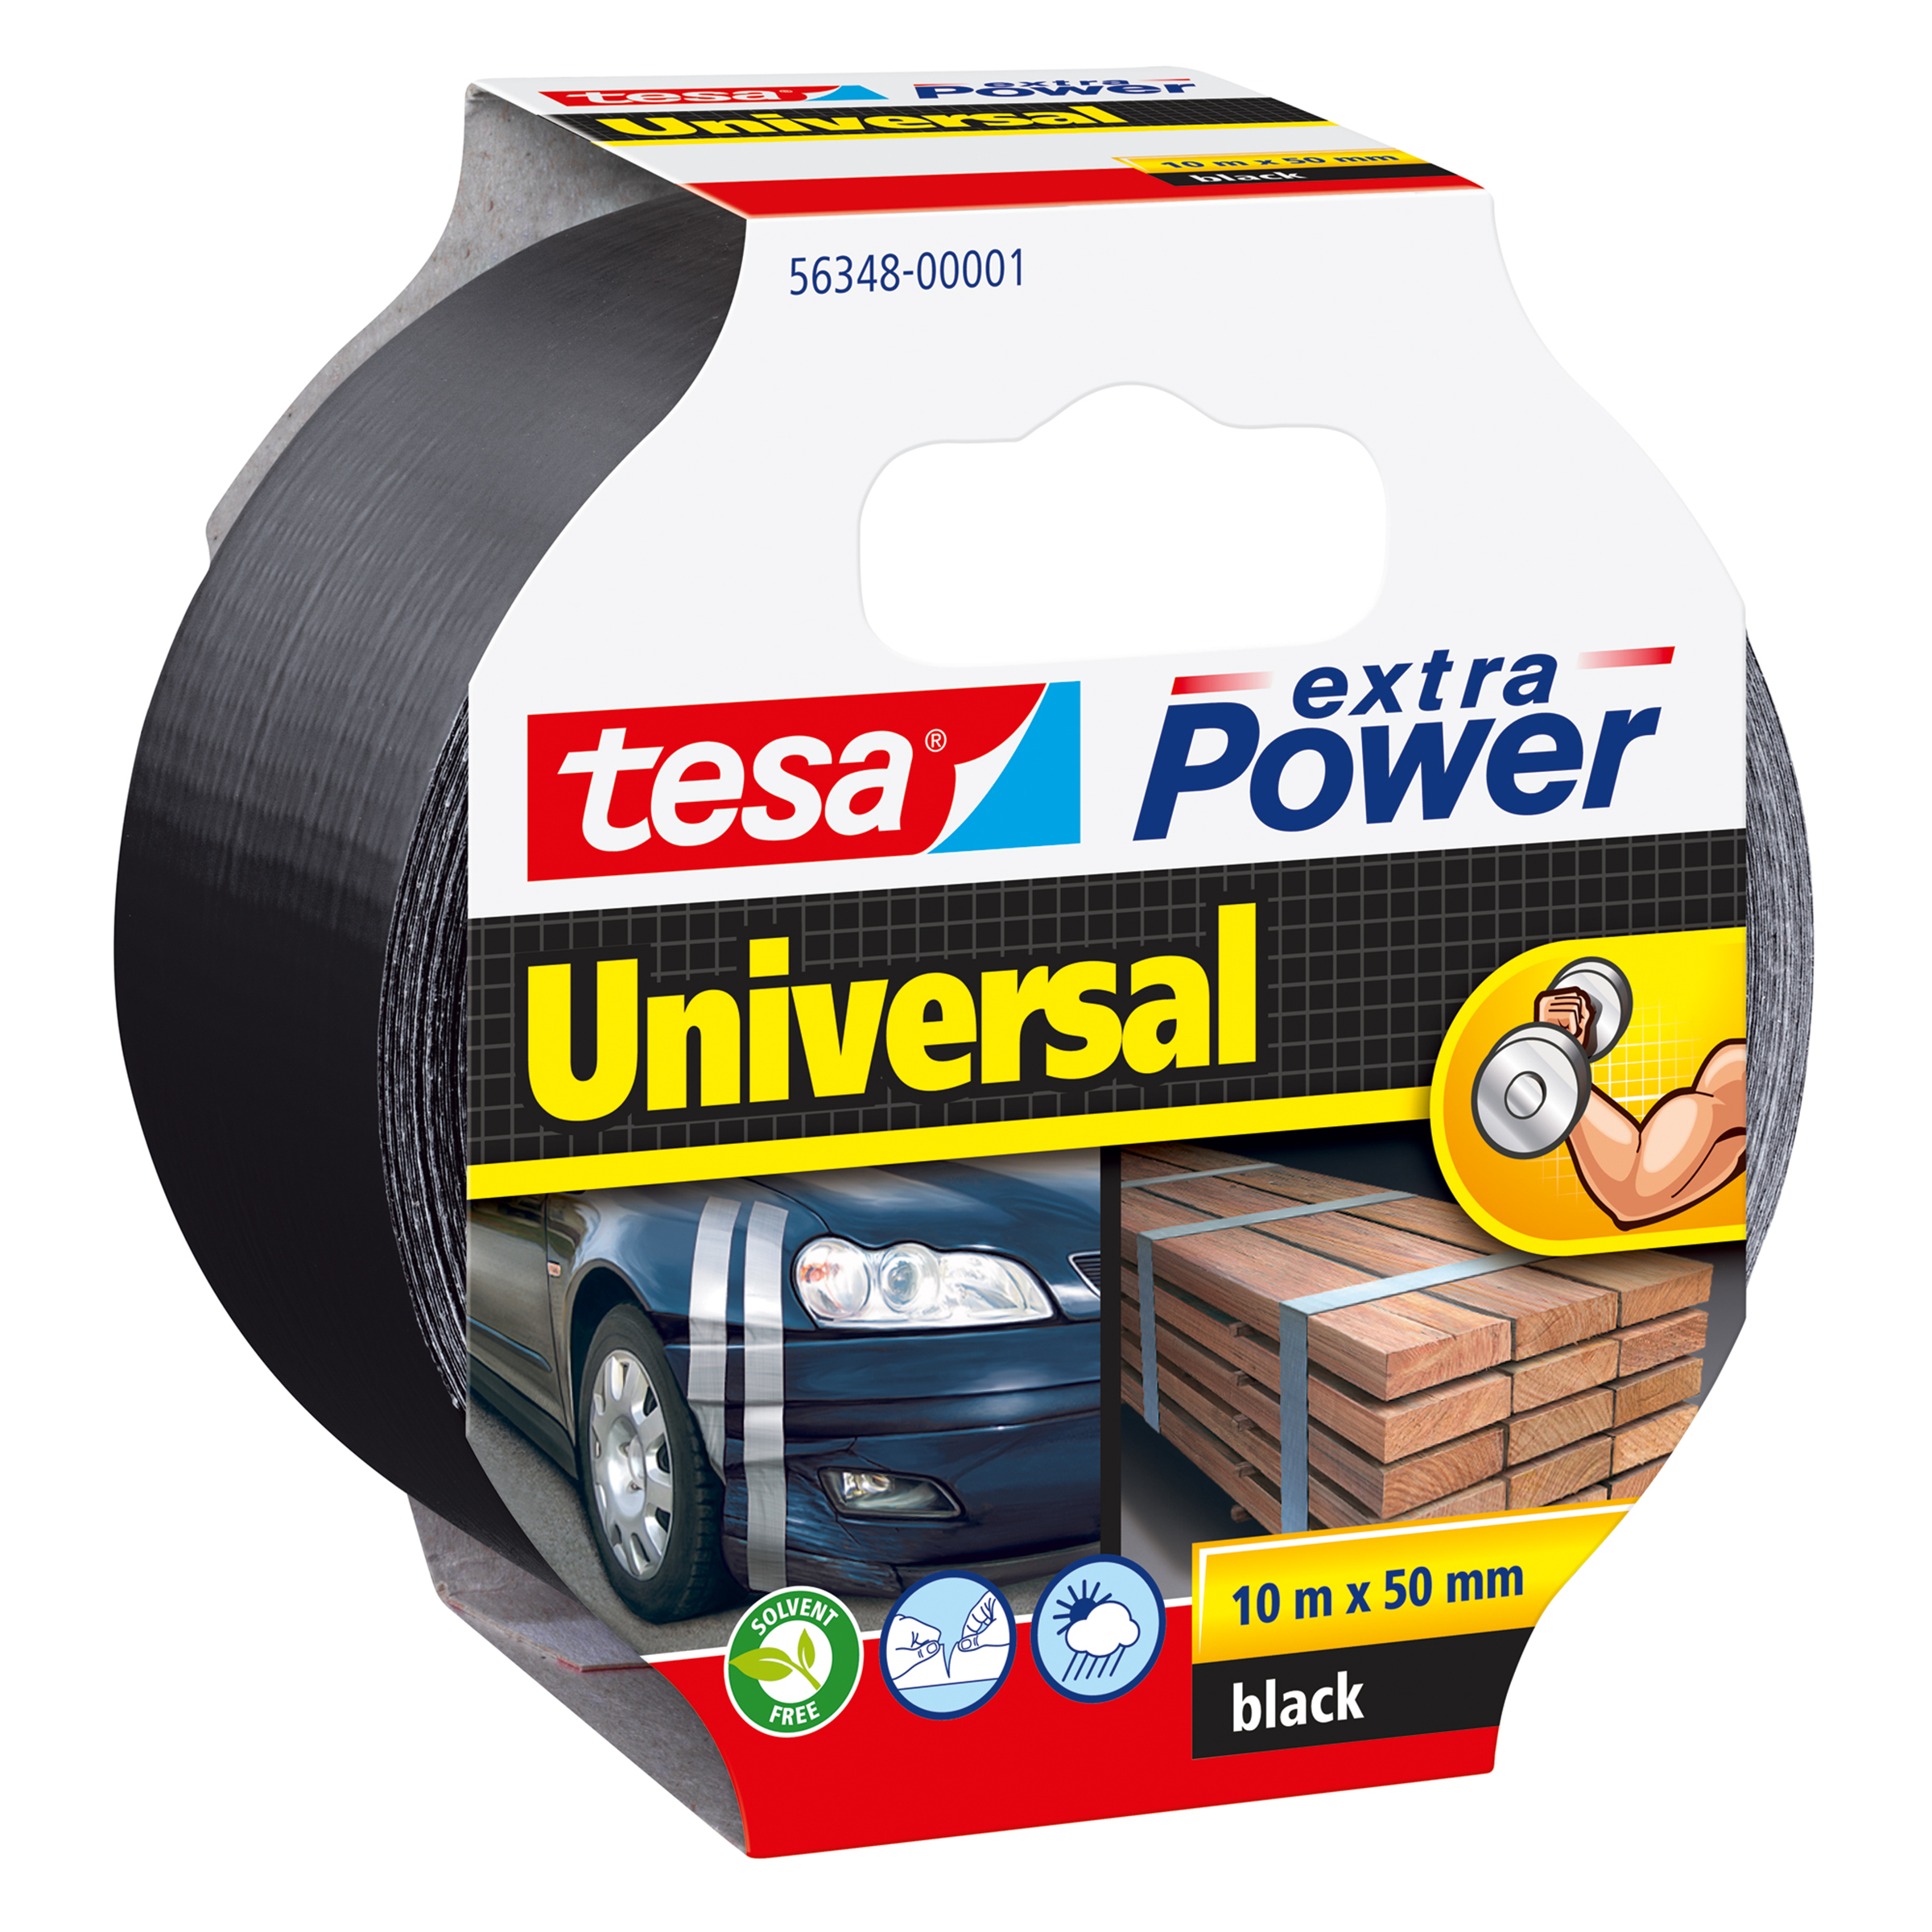 Tesa extra Power Universal - Schwarz - Befestigung - Handwerk - Kennzeichnung - Reparatur - Metall - Holz - 10 m - 50 mm